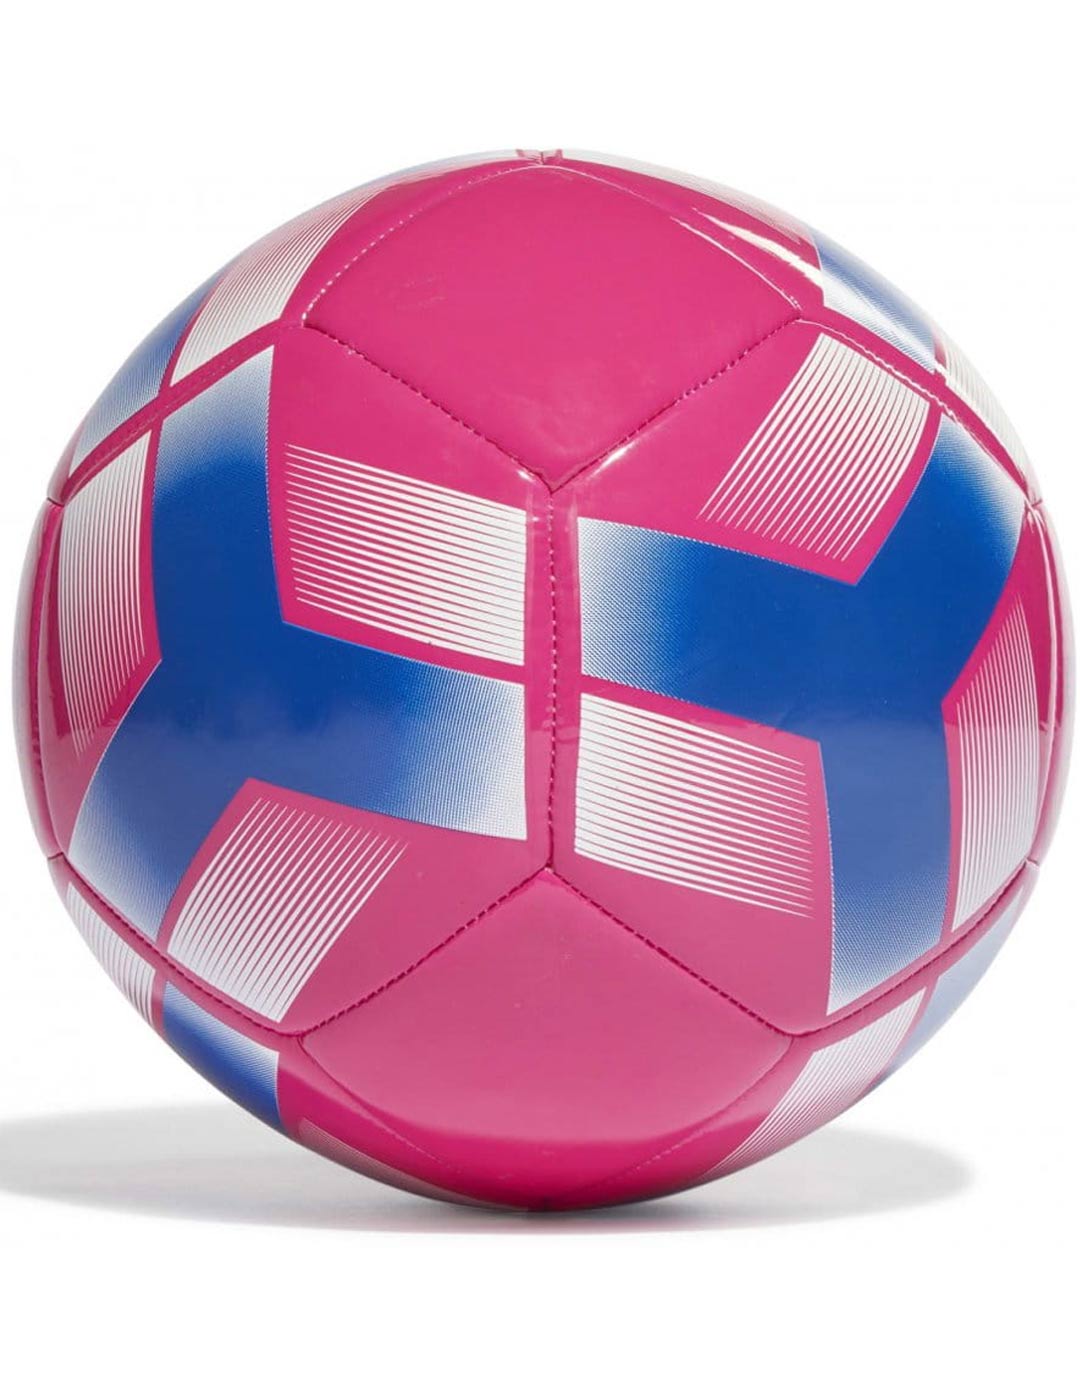 Balón de Fútbol adidas starlancer, rosa